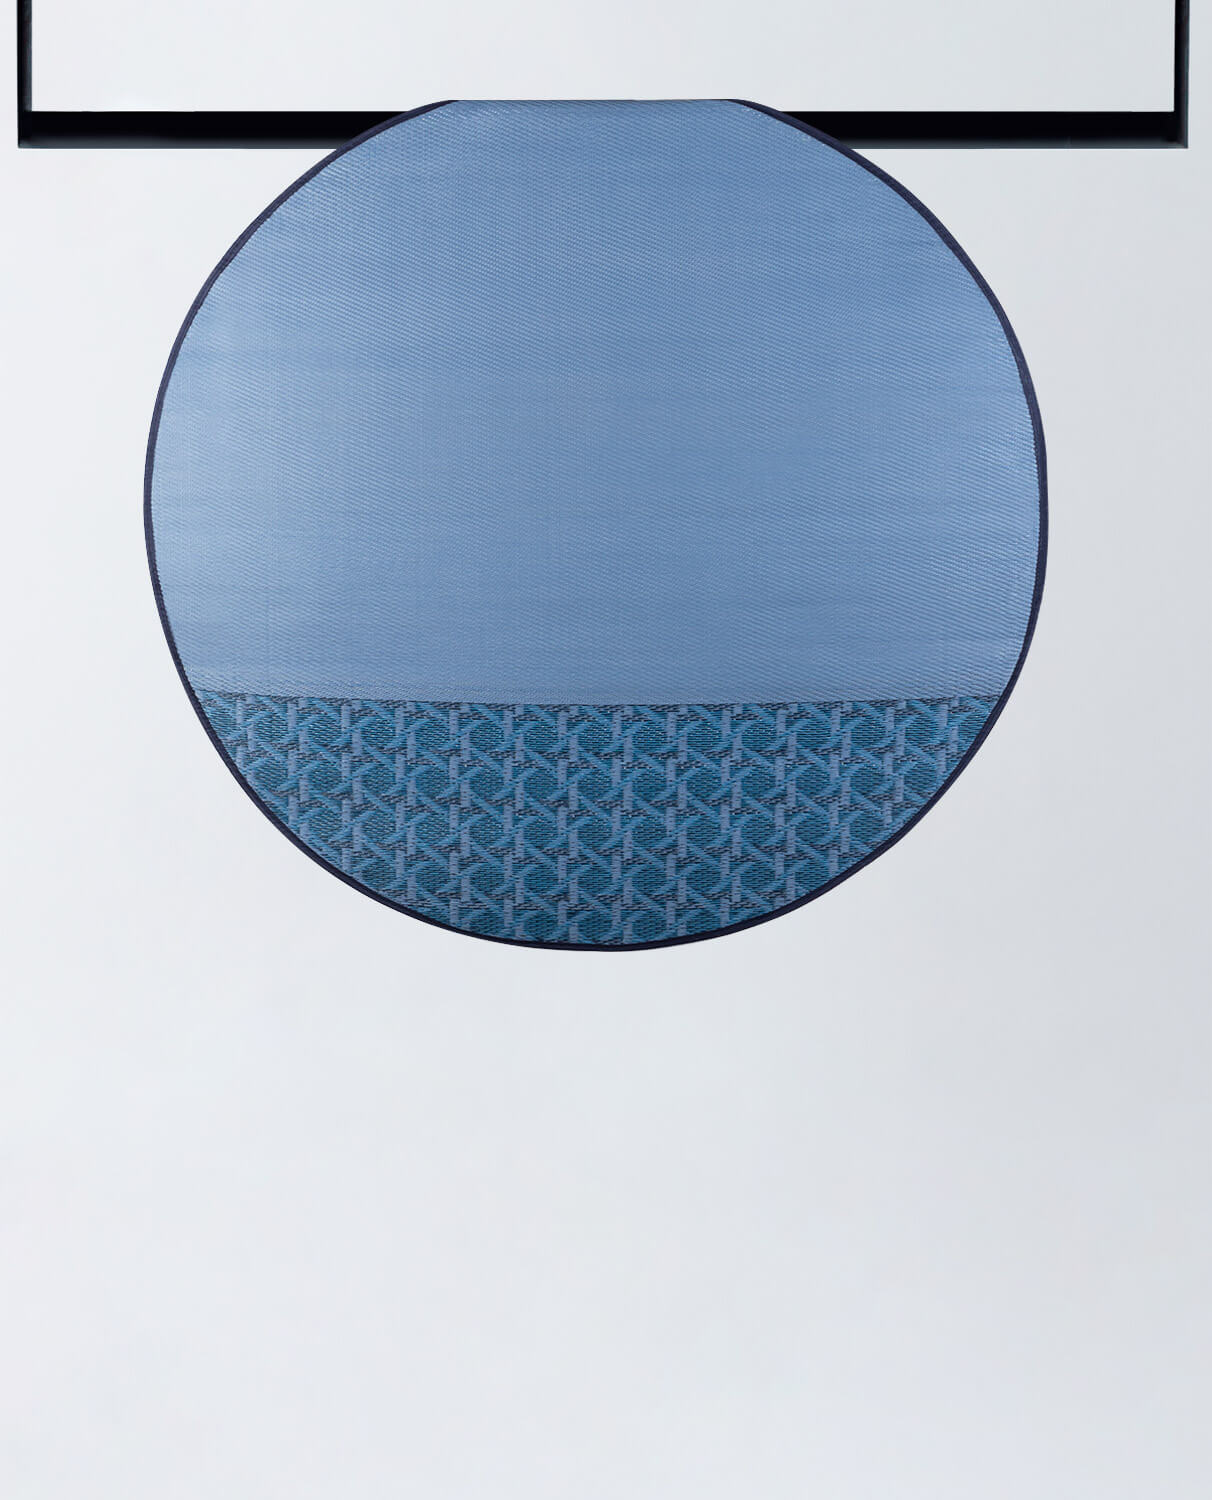 Tappeto da esterno rotondo in polipropilene (Ø150 cm) Tramuntan, immagine della galleria 1